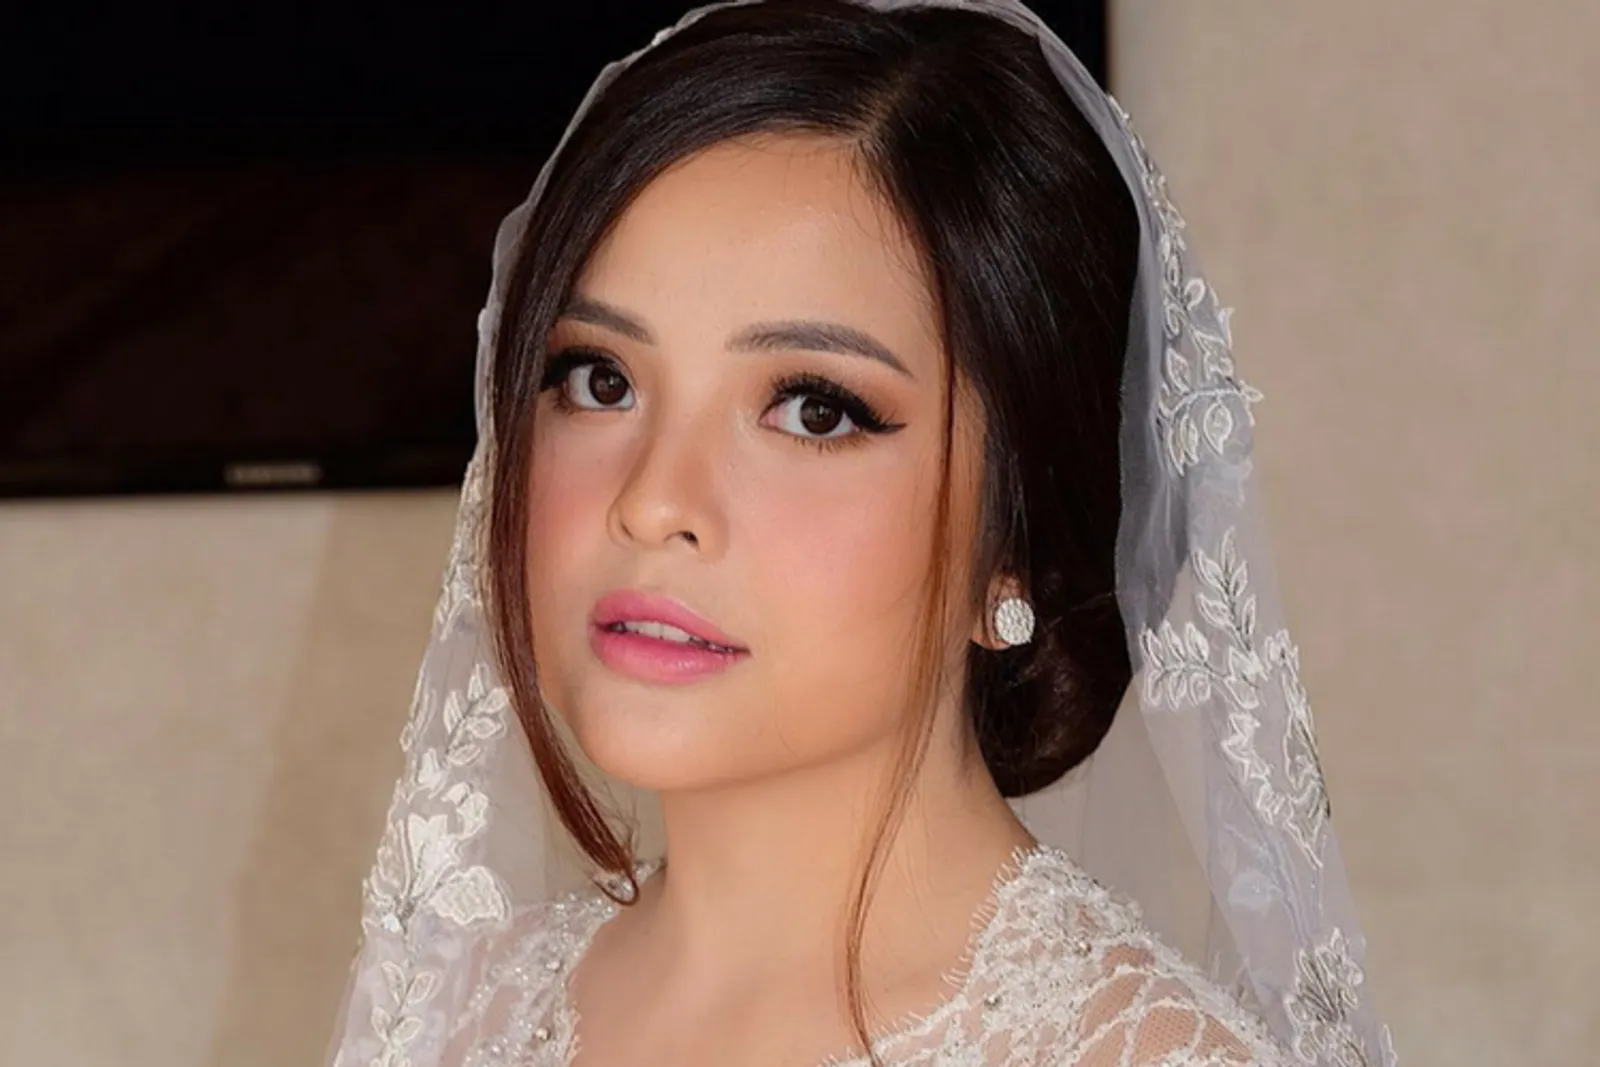 Tampil Memukau, Makeup Pernikahan Tasya Kamila Terinspirasi Dari Tokoh Kartun 